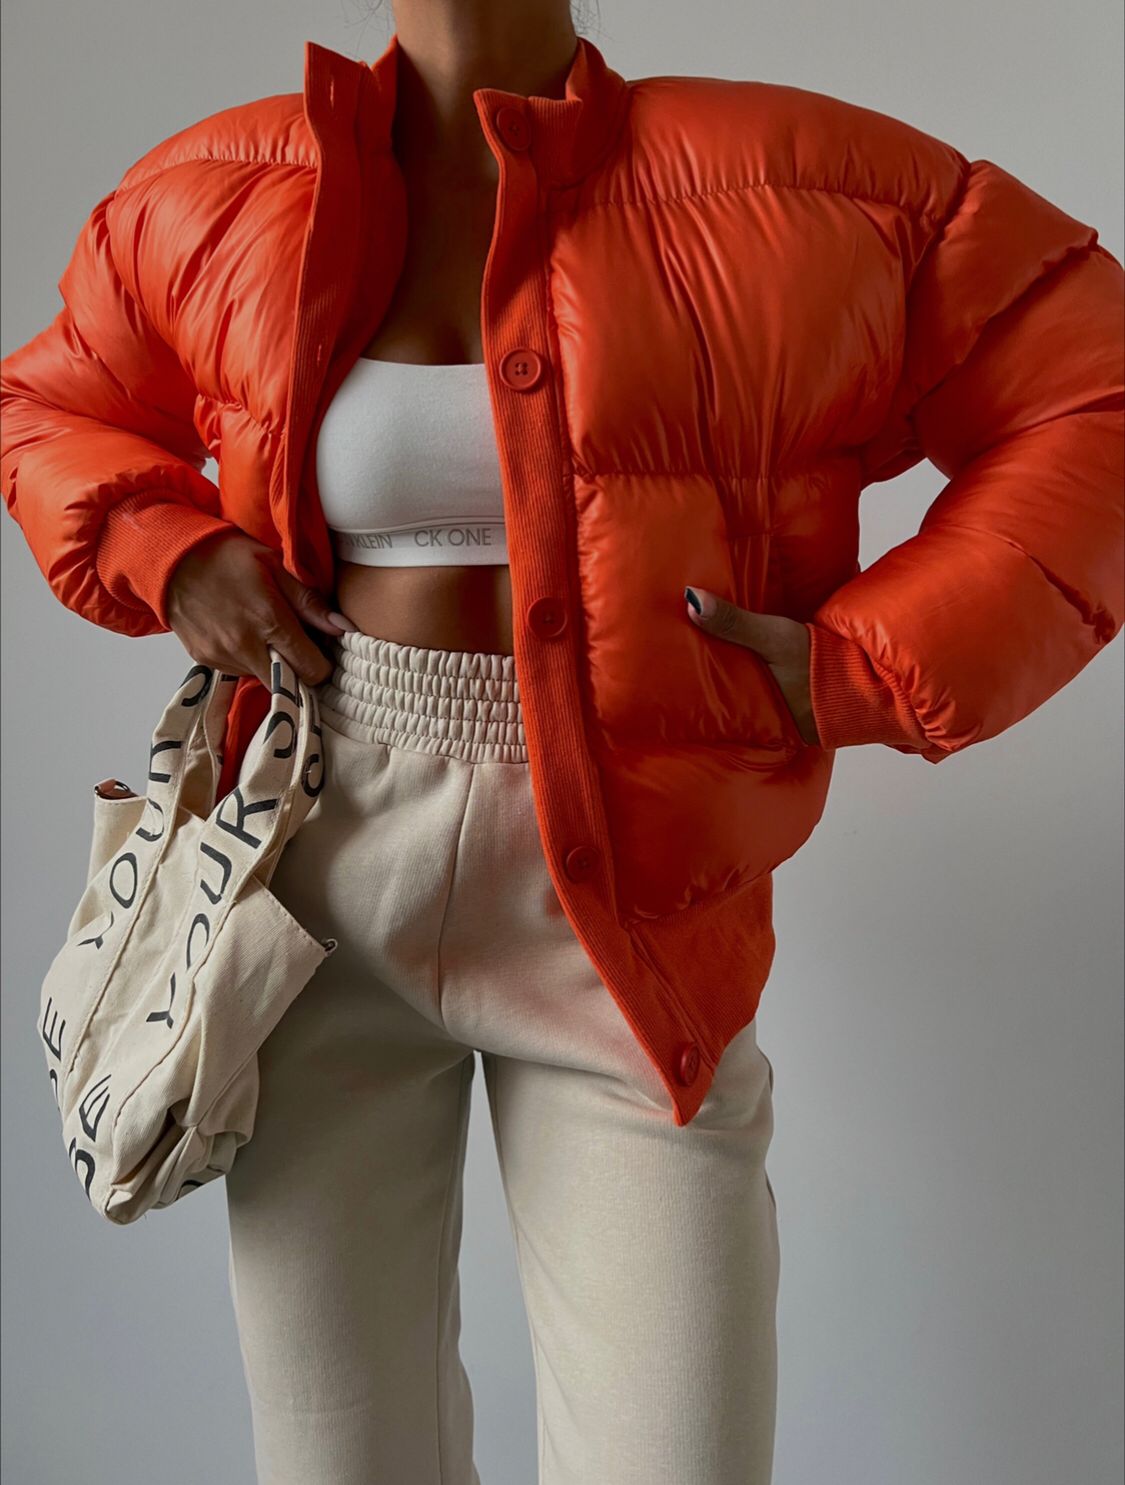 Дамско яке DARA  https://bvseductive.com/products/women-s-jackets-dara-5  модерно дамско яке в оранжев цвят изработено от мека, топла и приятна материя кройка с дължина до кръста и ръкави с ластик в края супер предложение за Вашата визия в студените дни чудесен избор за гардероба на всяка модерна дама